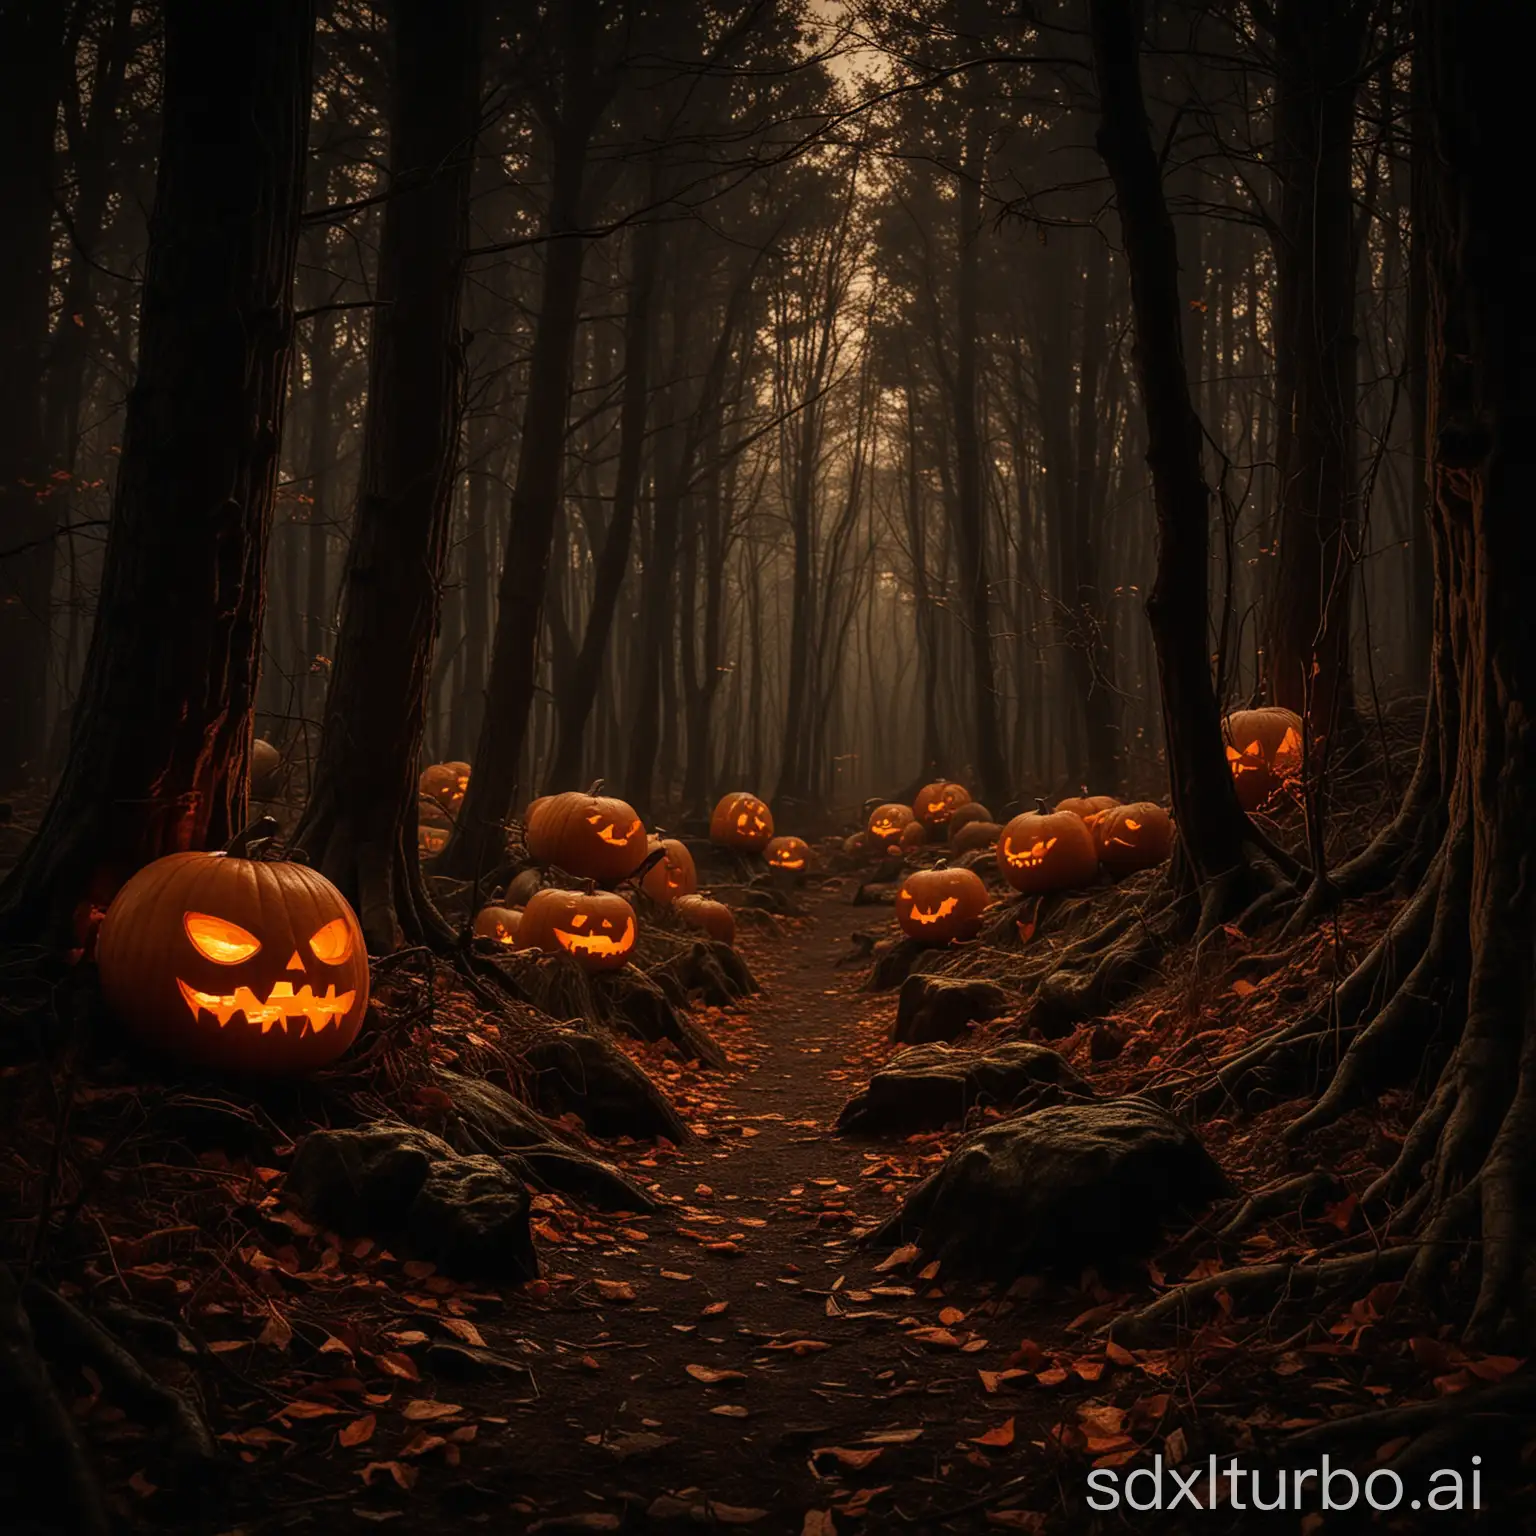 Eerie-Glowing-Pumpkins-Illuminate-Dark-Forest